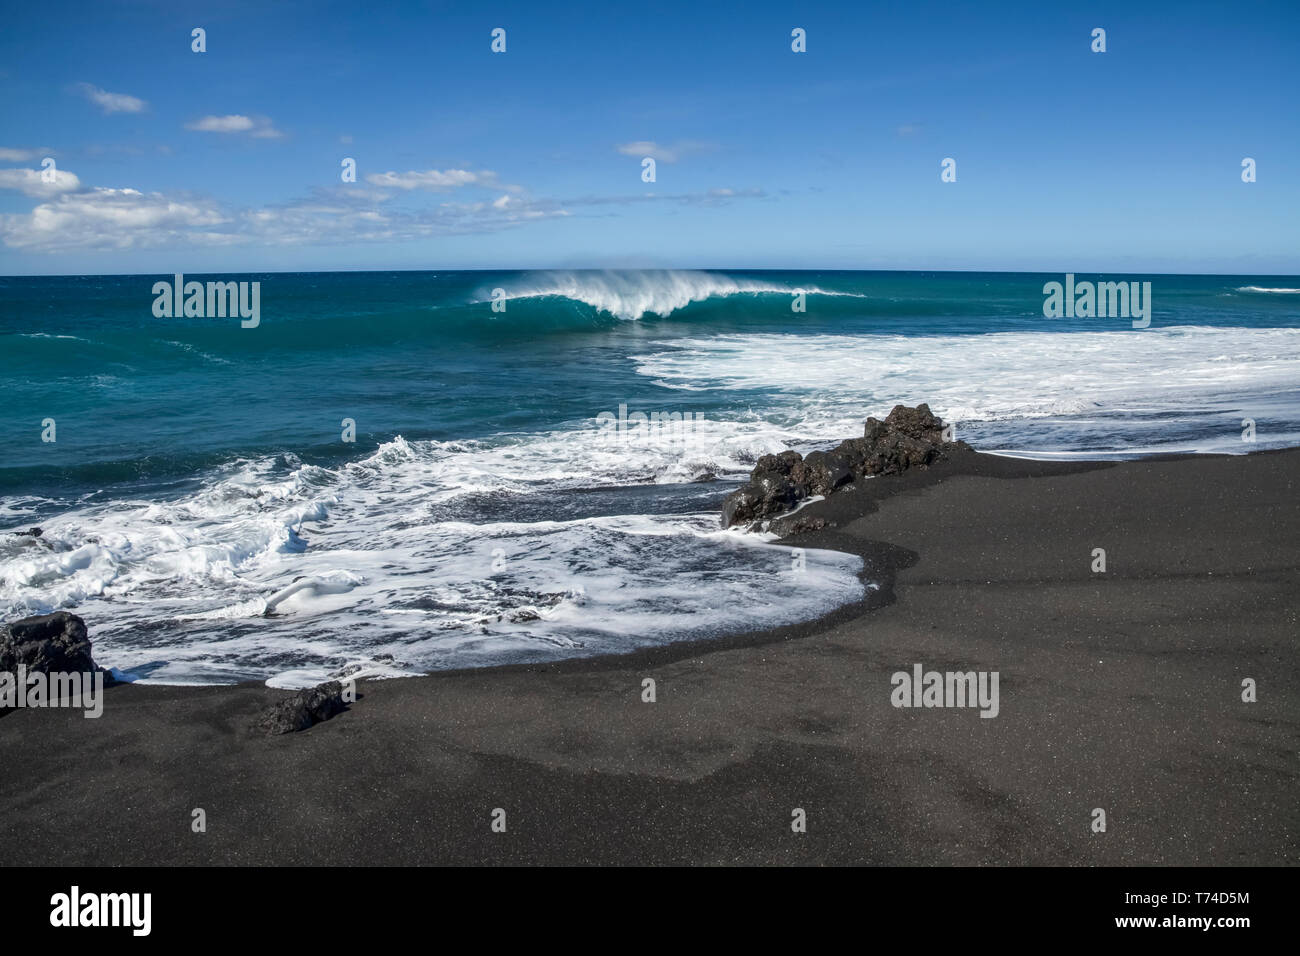 Il surf rompe sulla spiaggia di sabbia nera, Pueo Bay, a nord della costa di Kona; Kailua-Kona, isola di Hawaii, Hawaii, Stati Uniti d'America Foto Stock